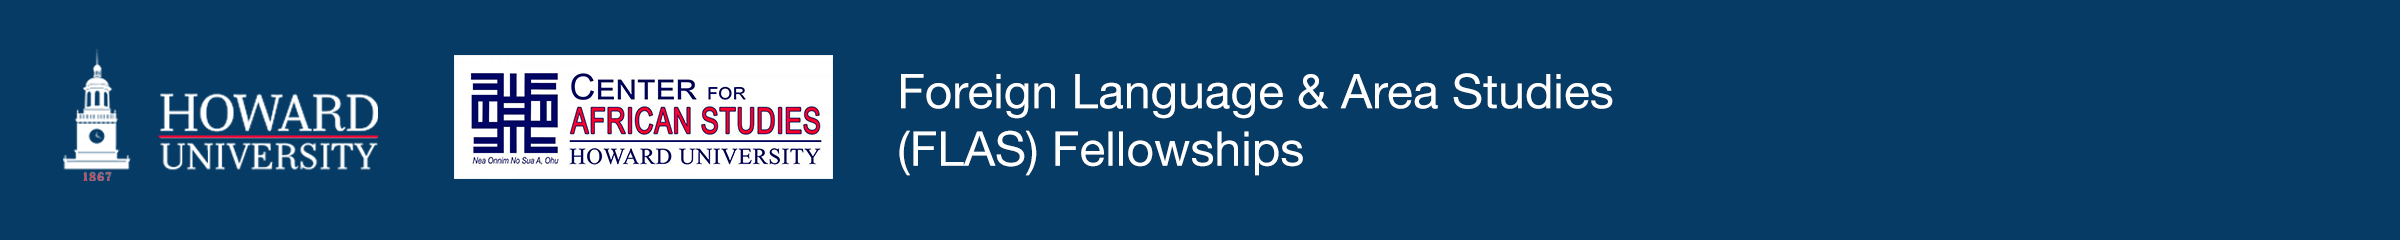 Foreign Language & Area Studies (FLAS) Fellowships logo